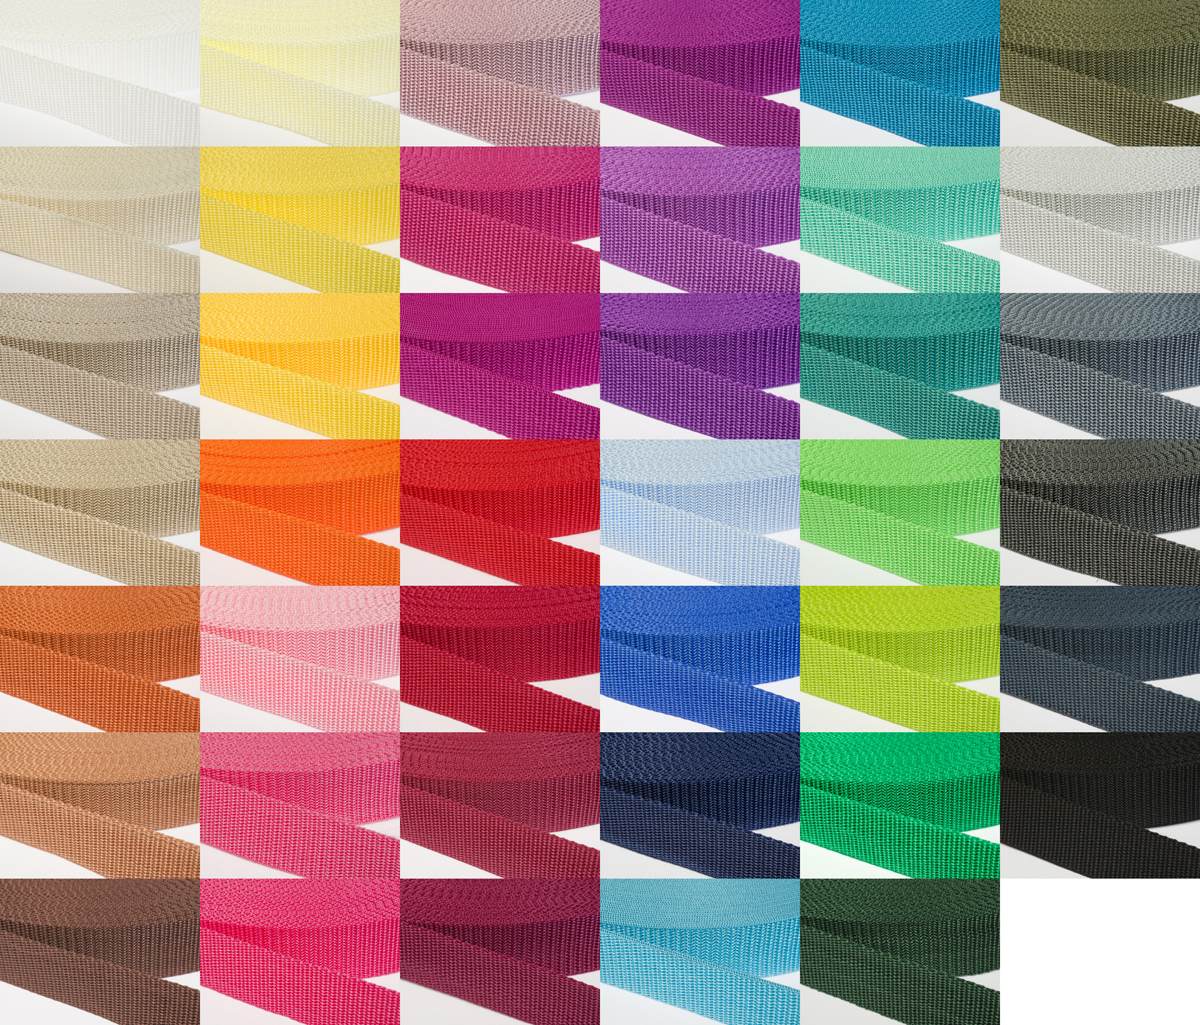 Gurtband 30mm breit aus Polypropylen in 41 Farben 06 - hellbraun 12 Meter